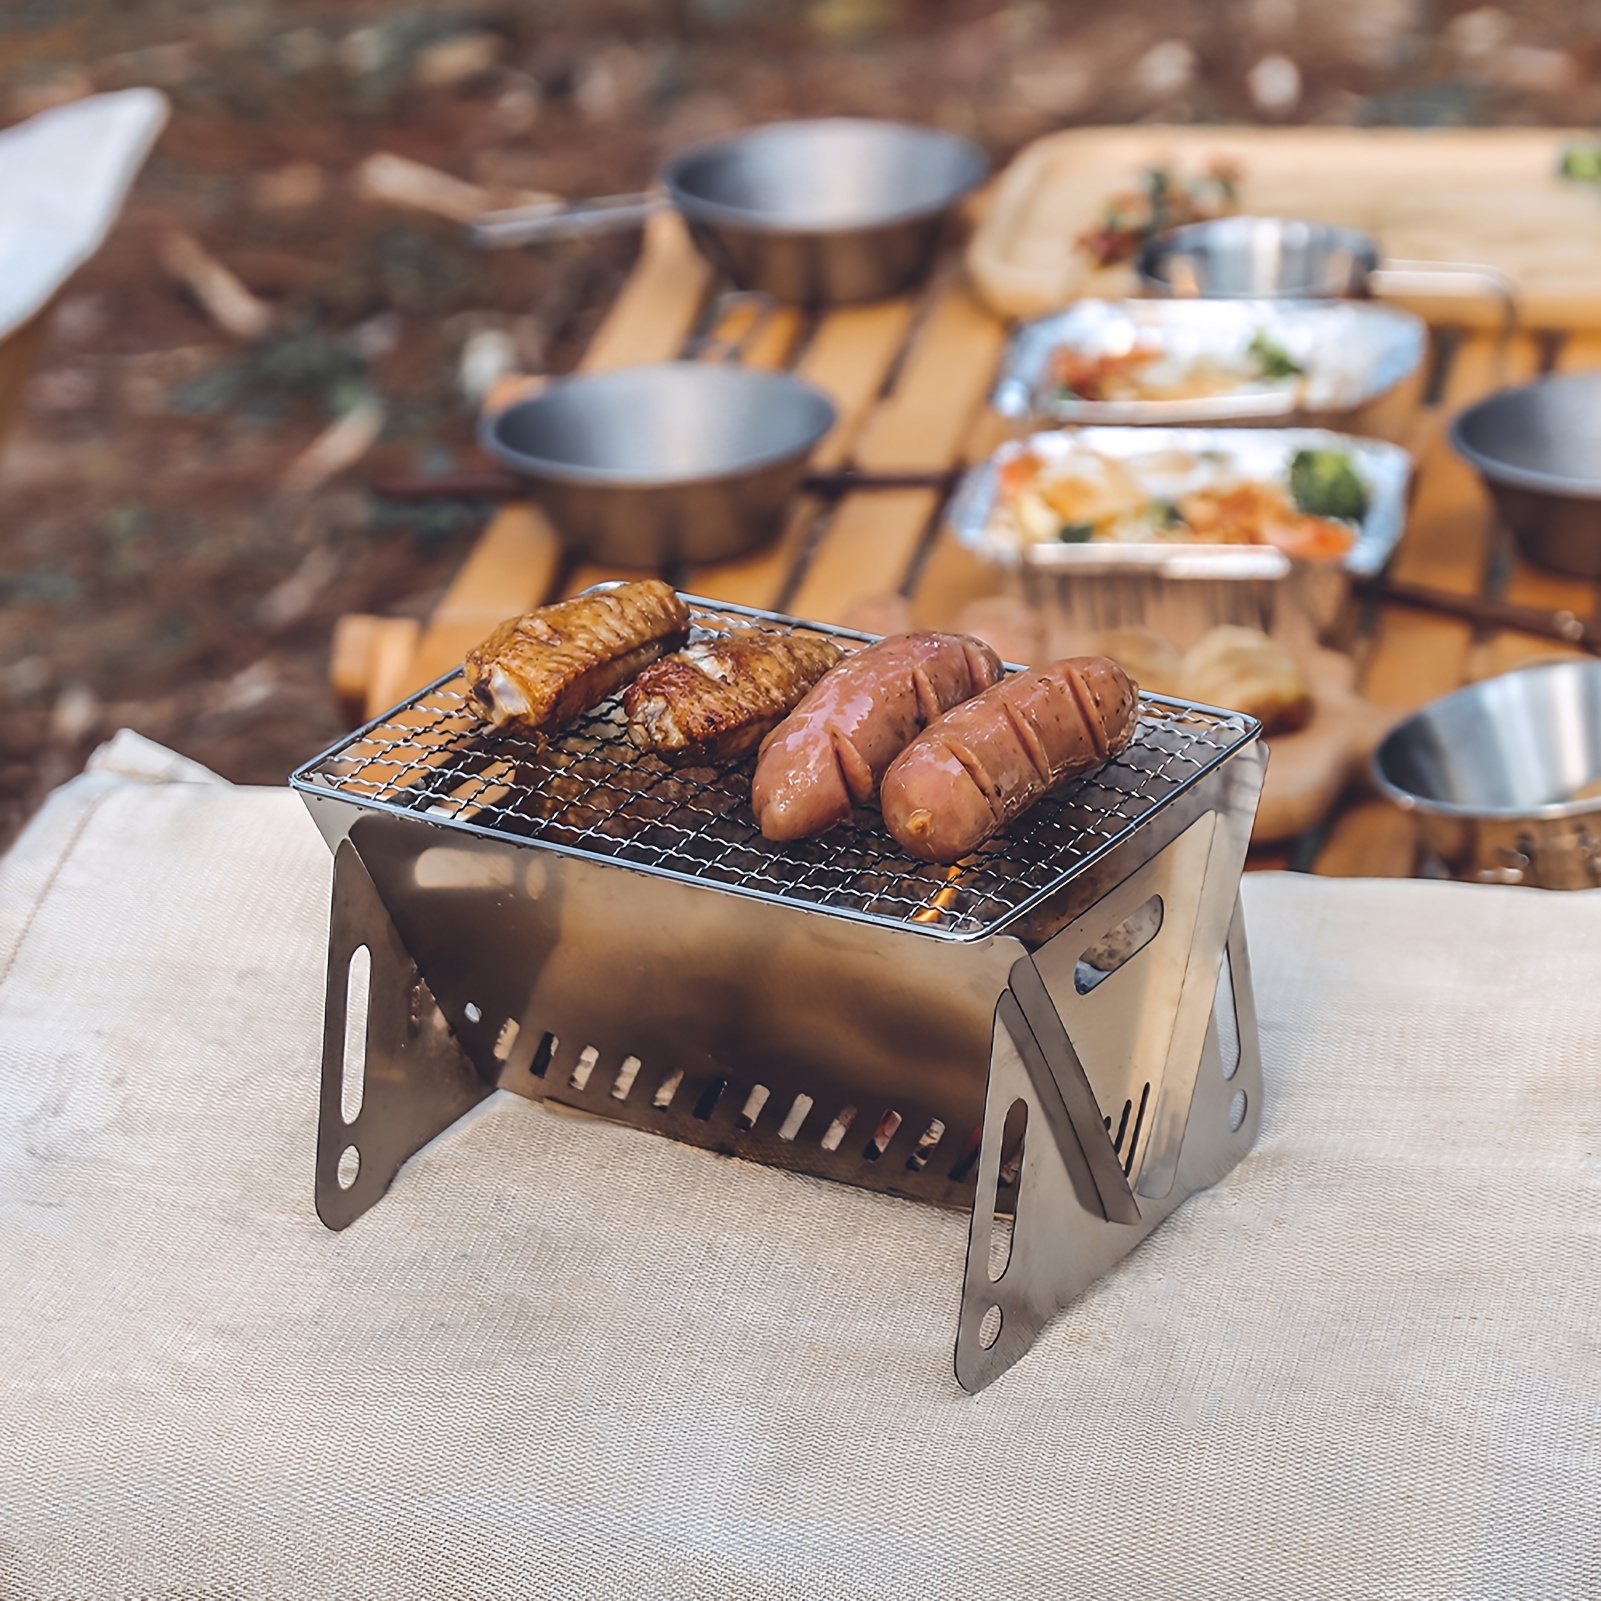 Mini Parrilla de barbacoa al aire libre, estufa de picnic plegable